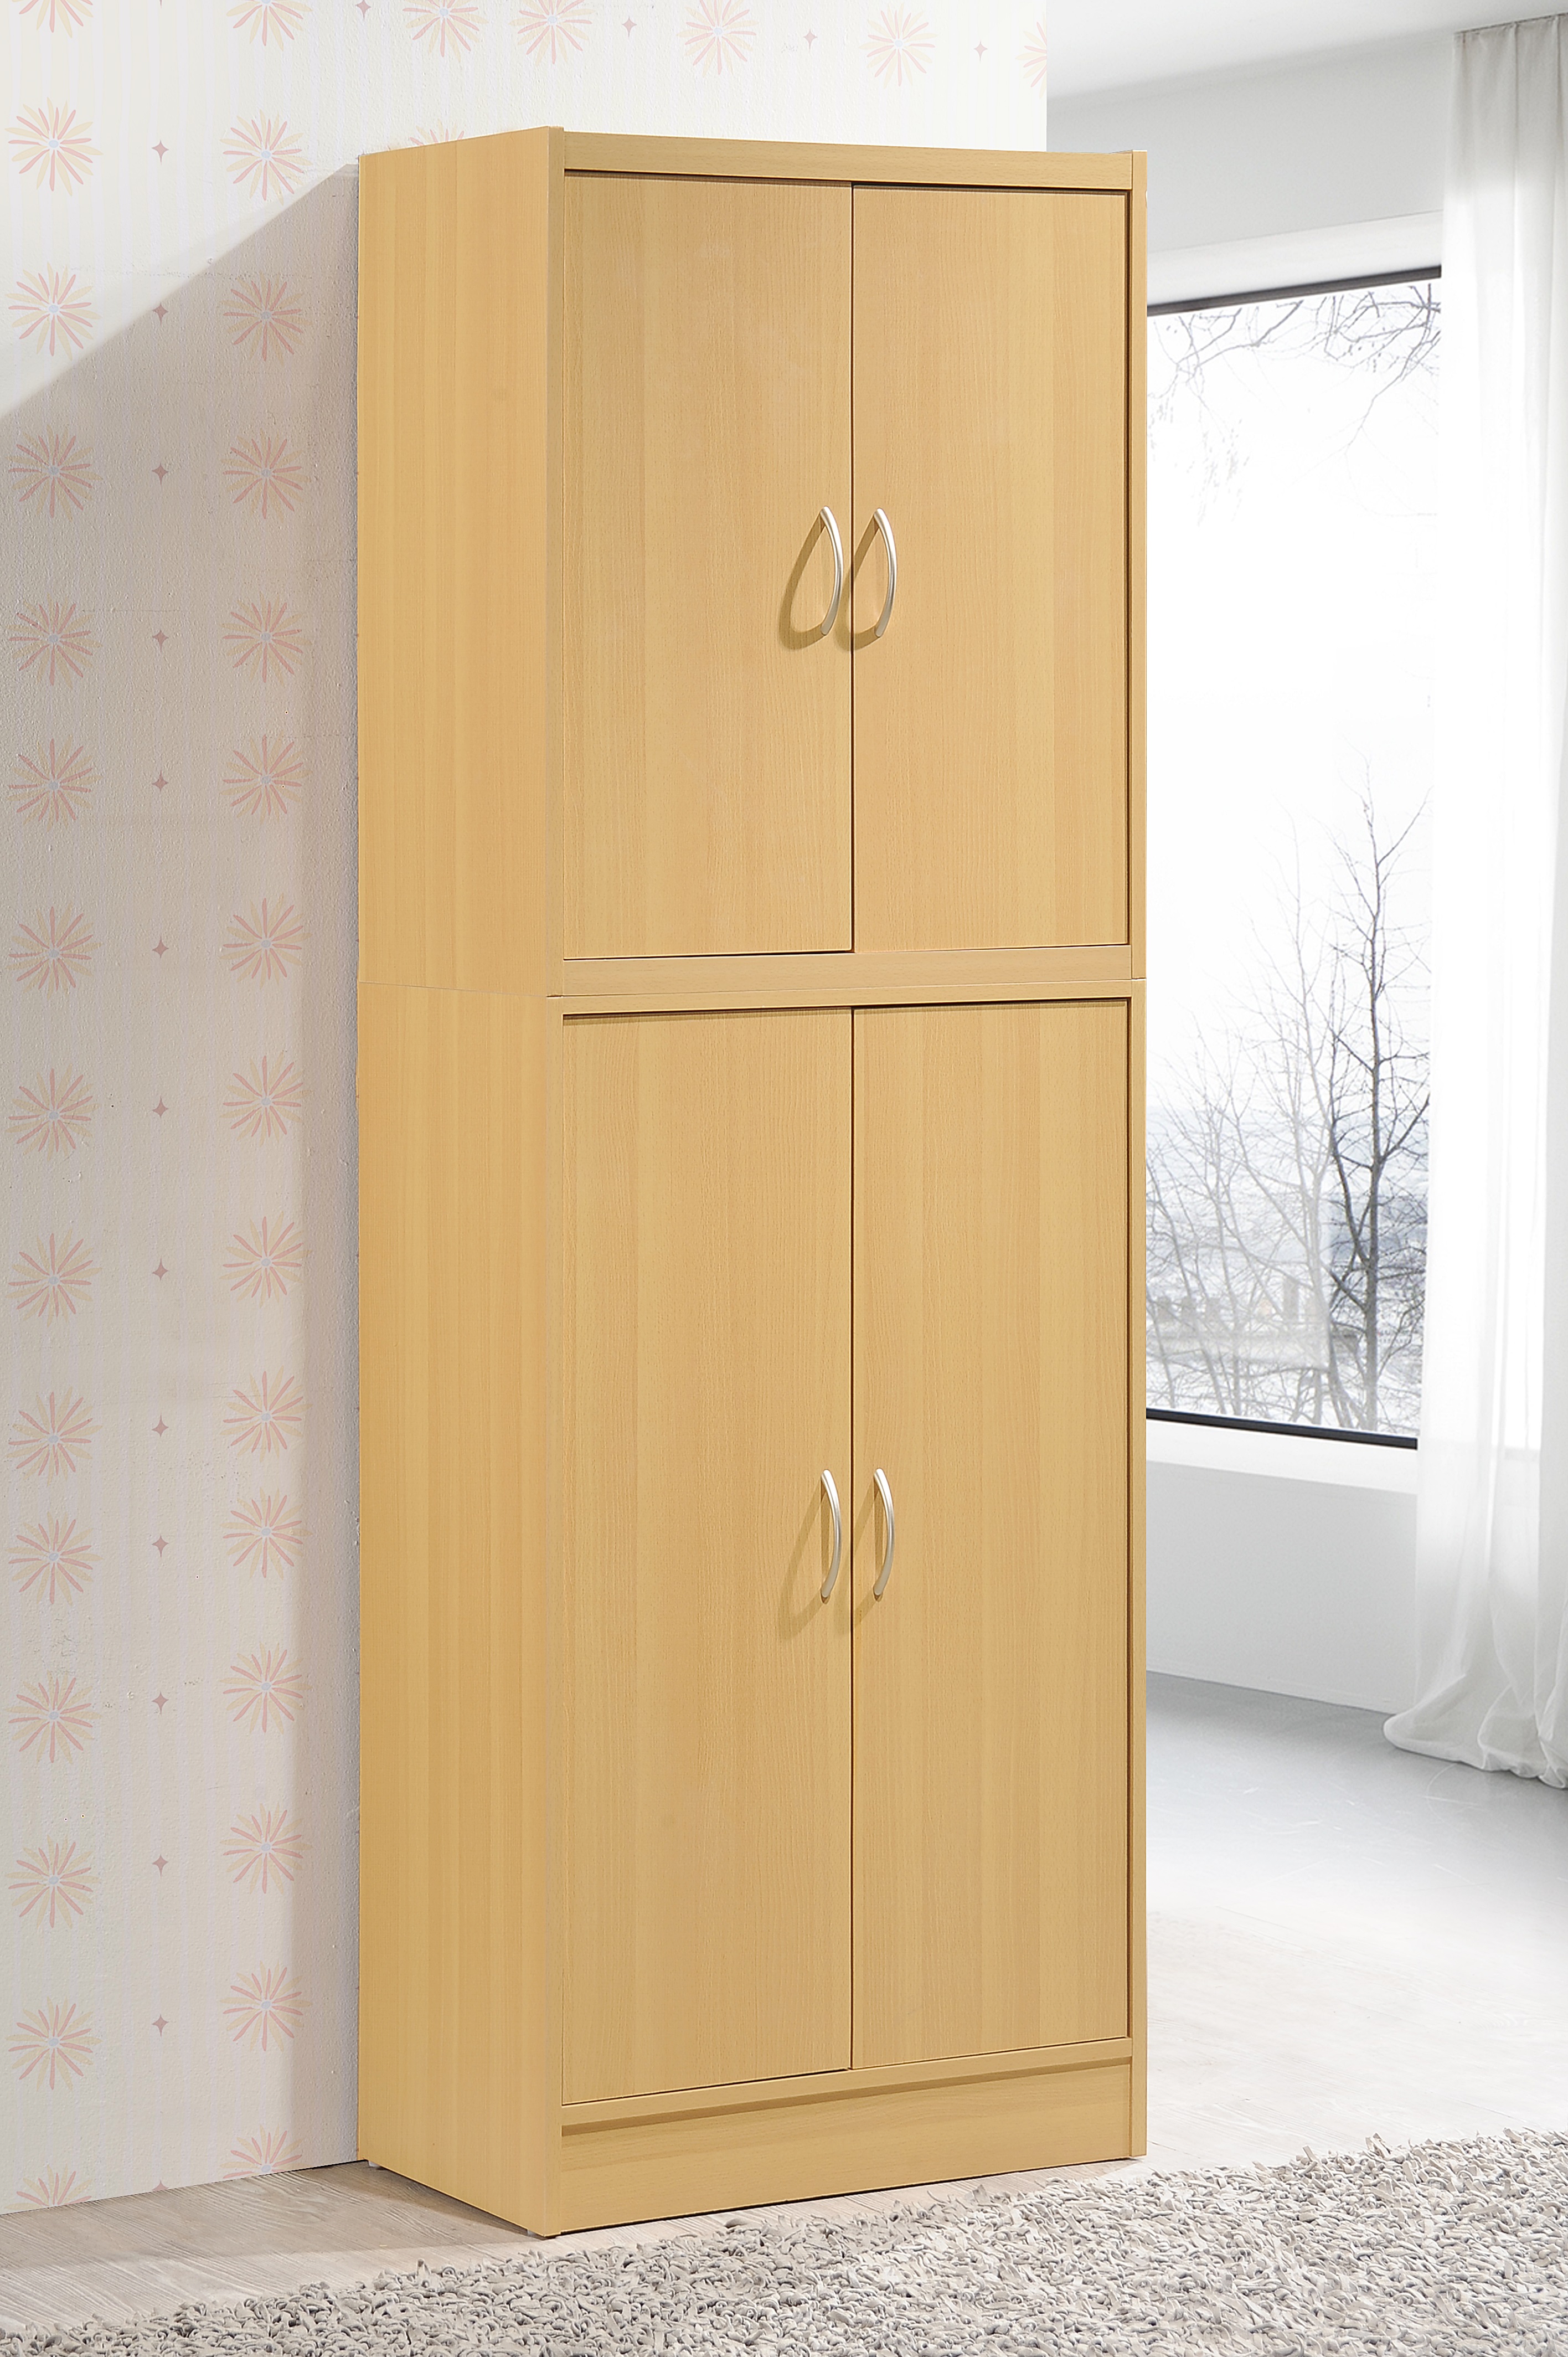 Picture of Hodedah Hi224 Beech 4 Door Pantry Cabinet